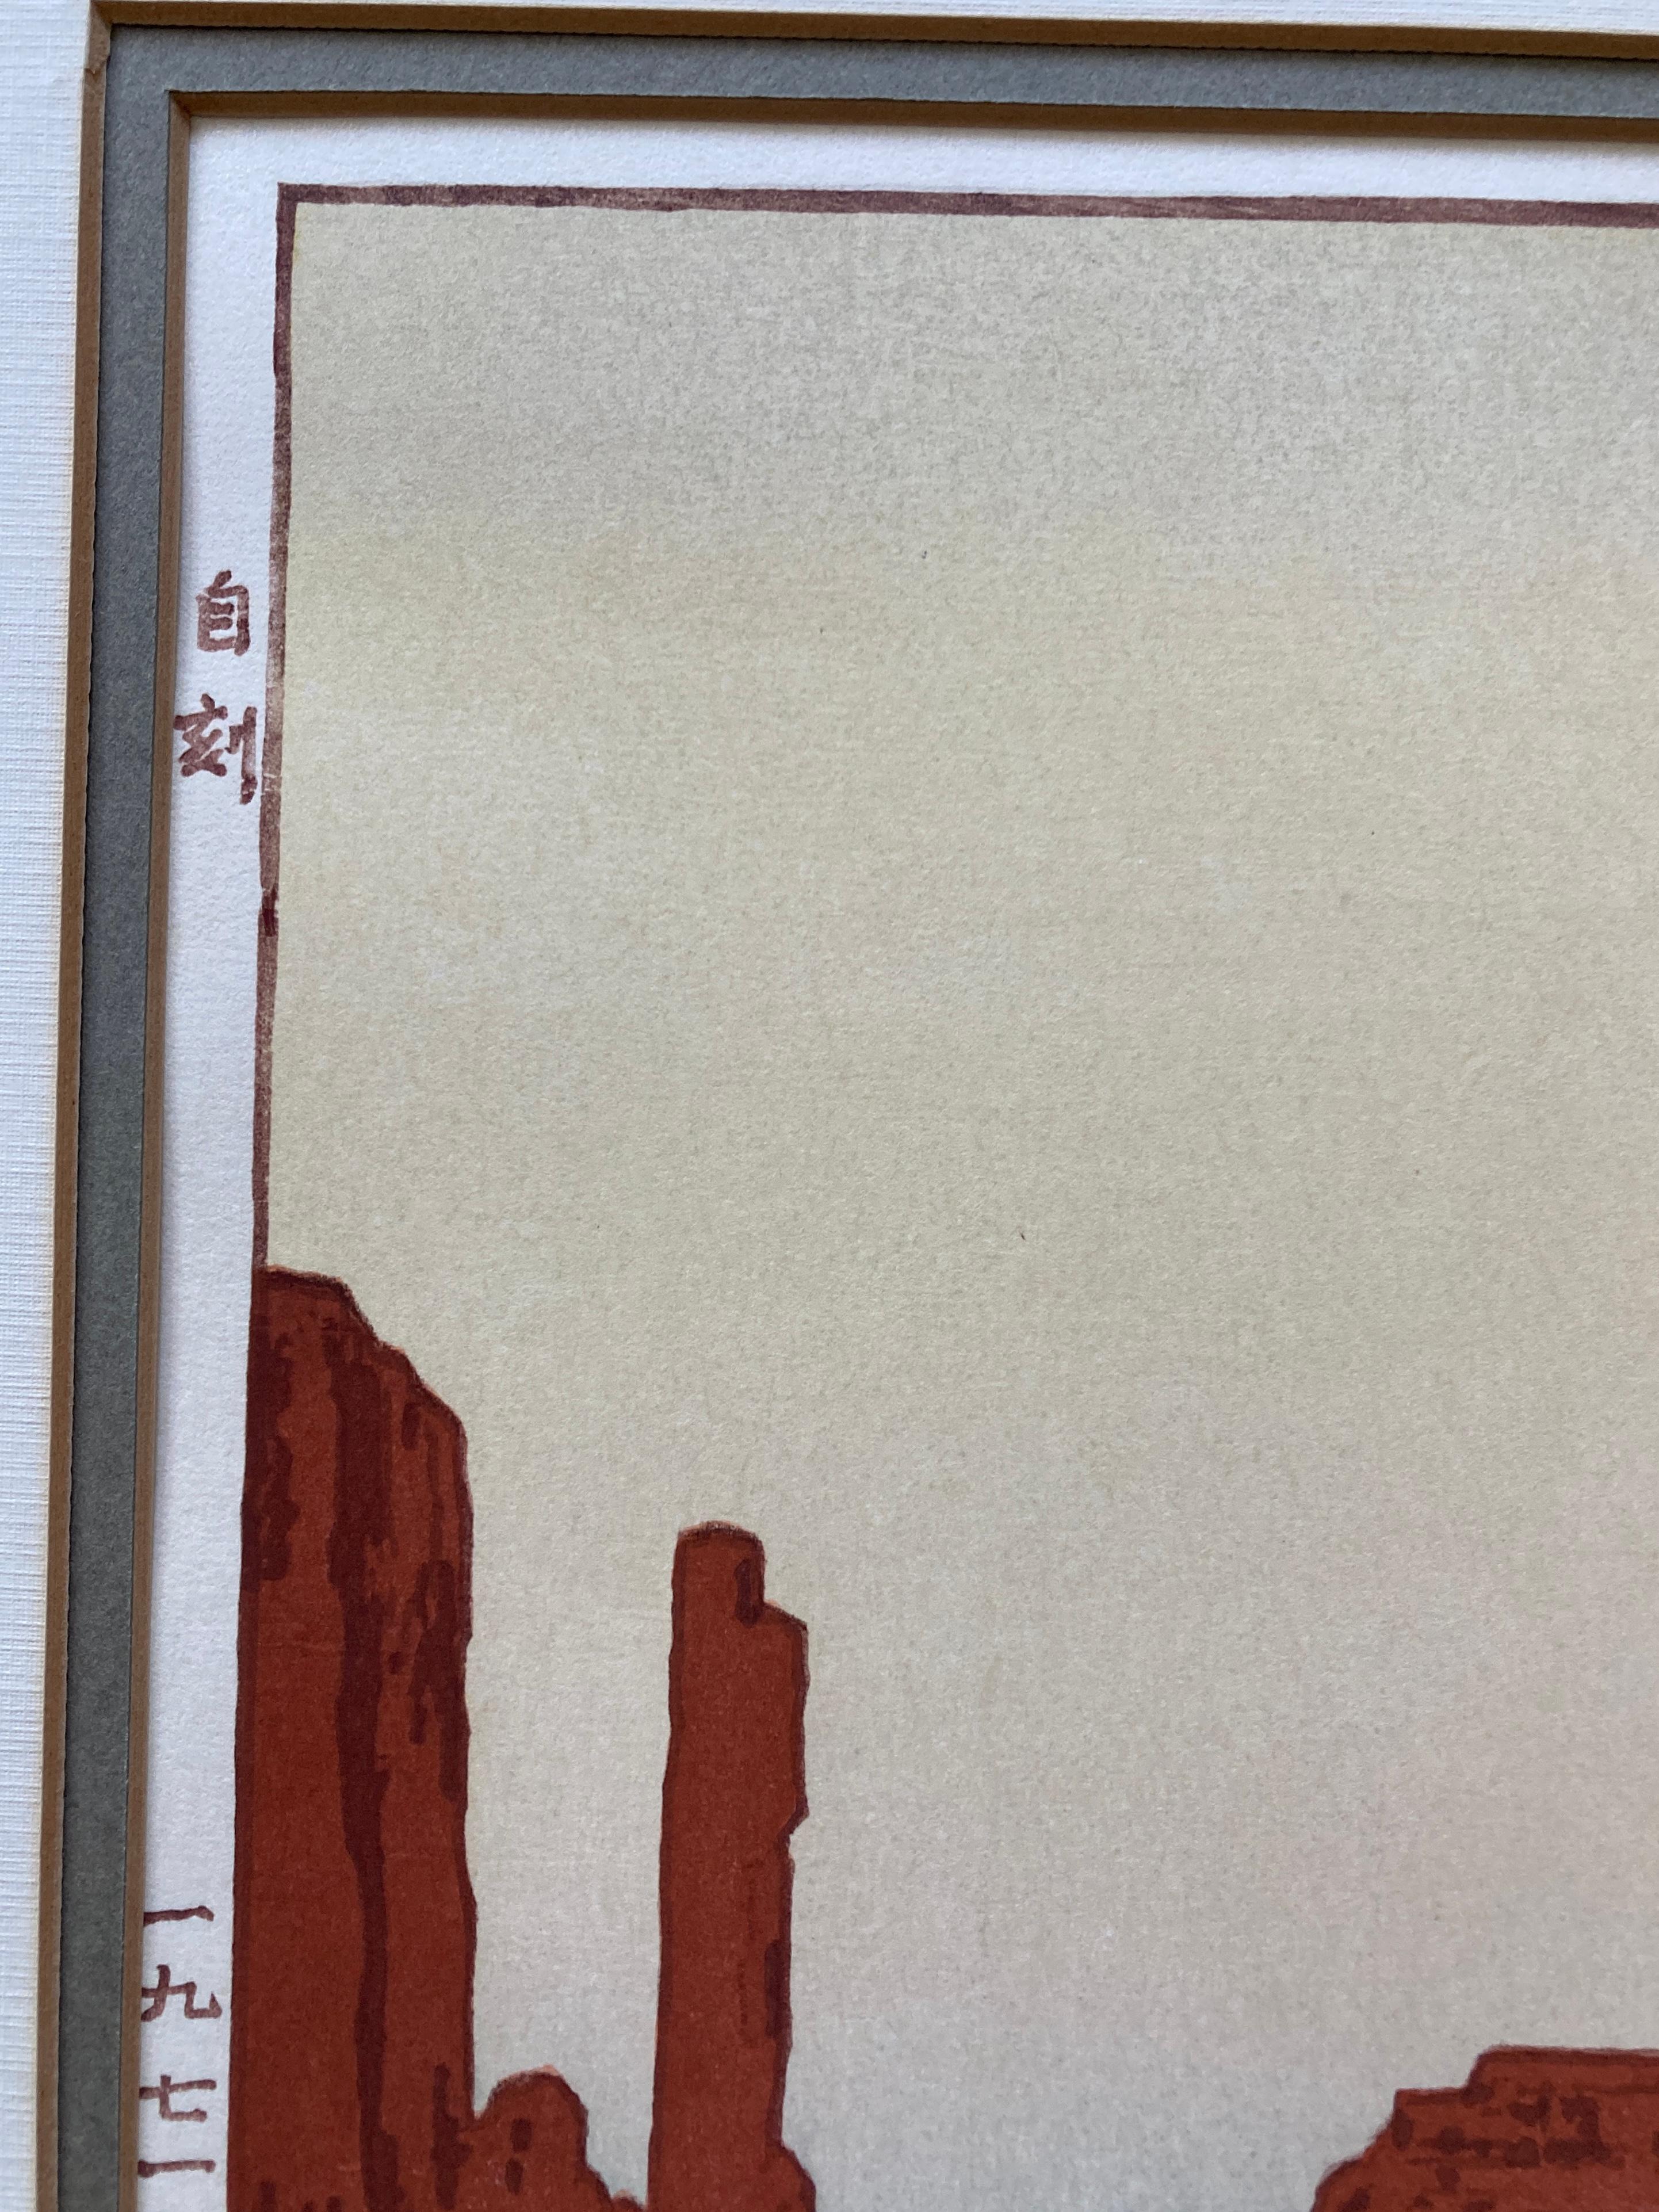 Toshi Yoshida 'Monument Valley' Woodblock Print, 1971 5